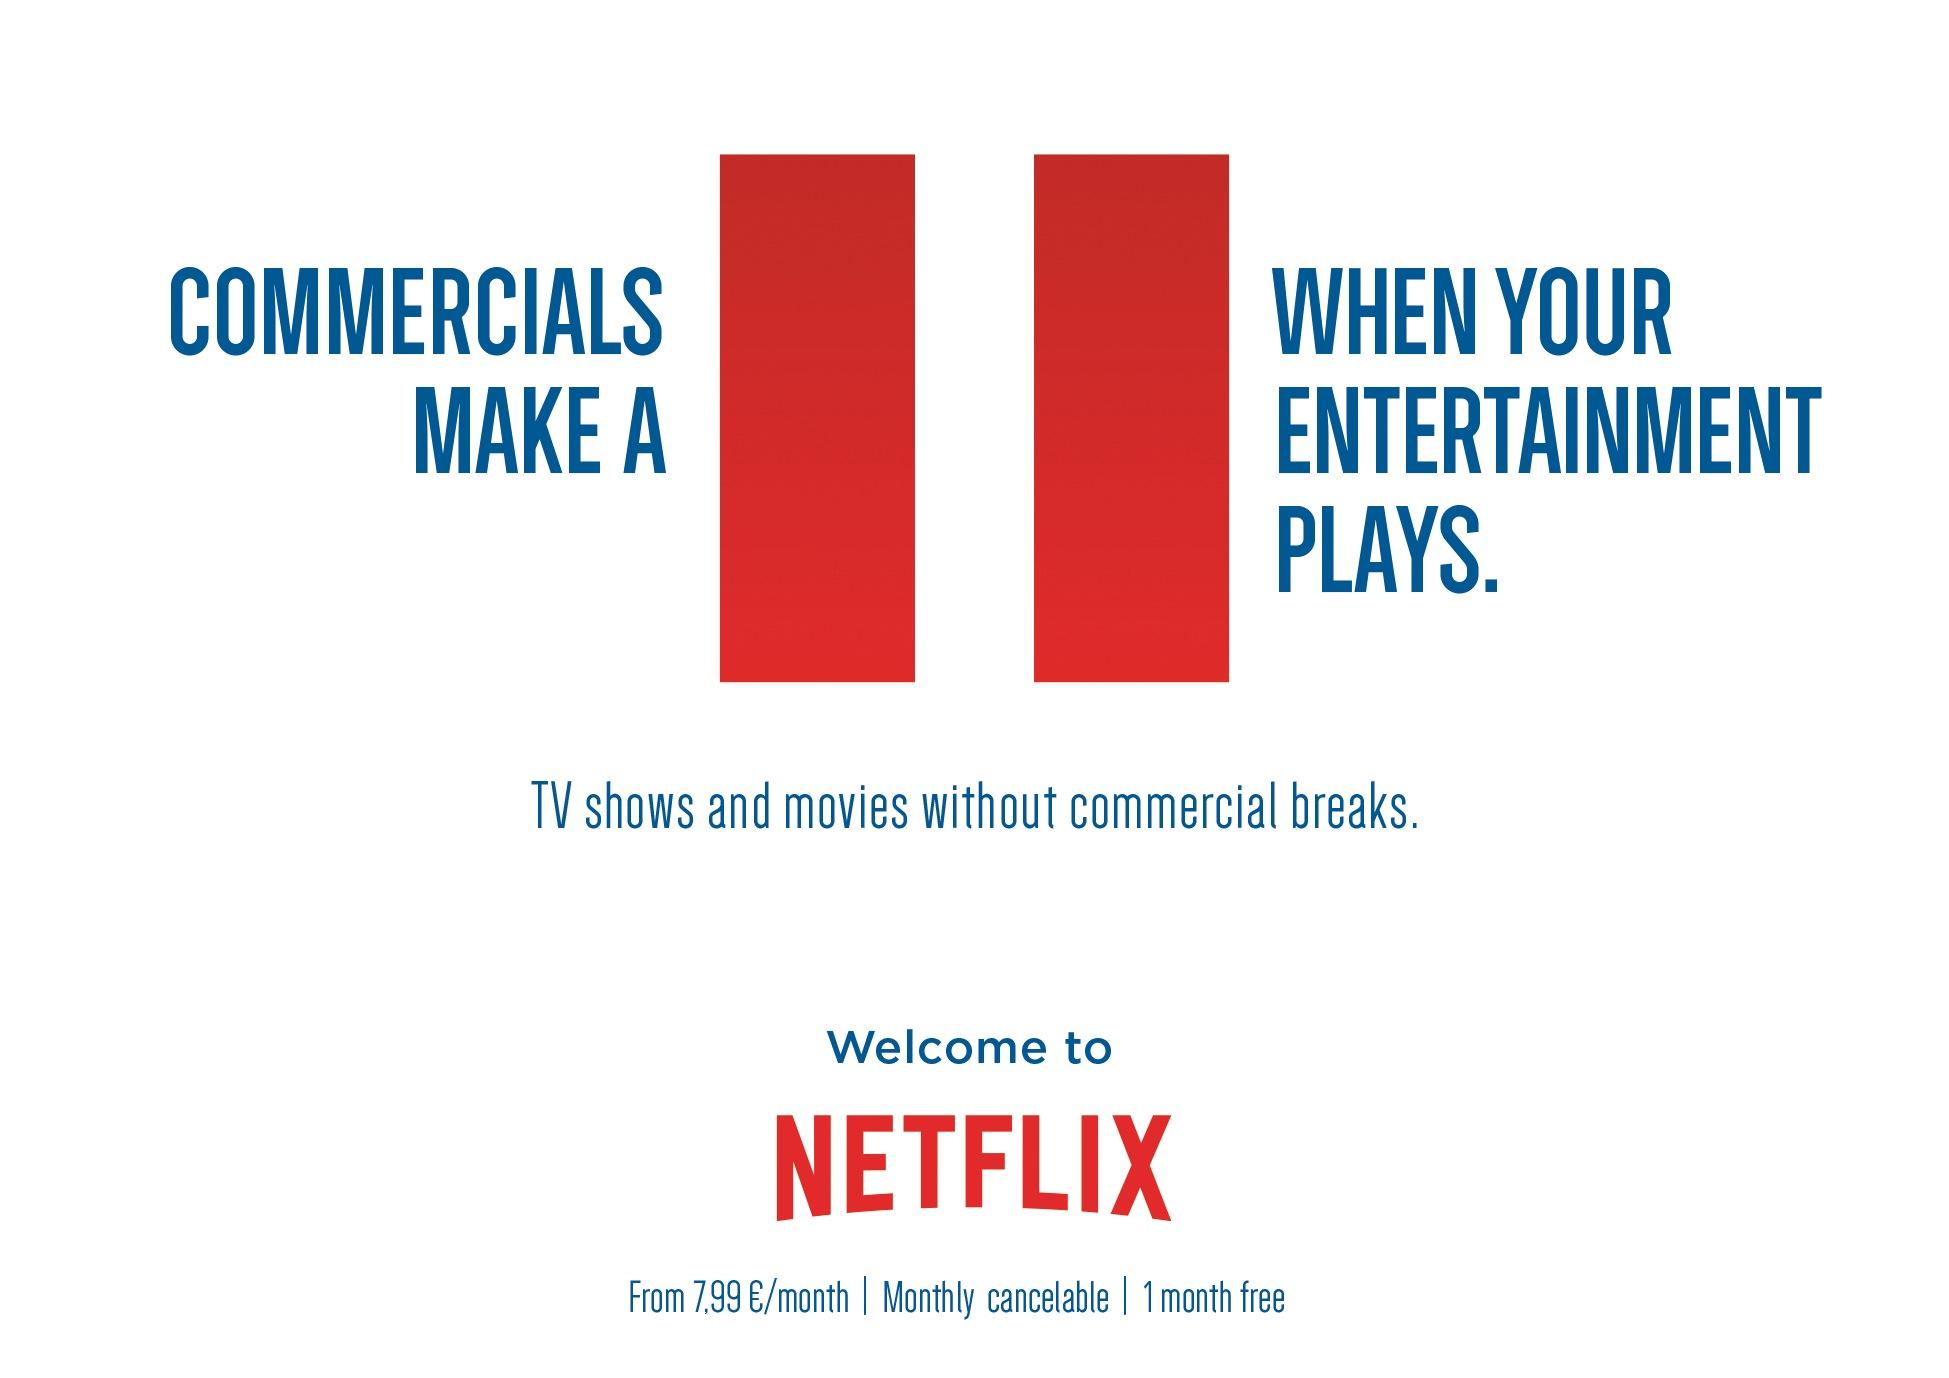 Is Netflix A Broken Business Model?